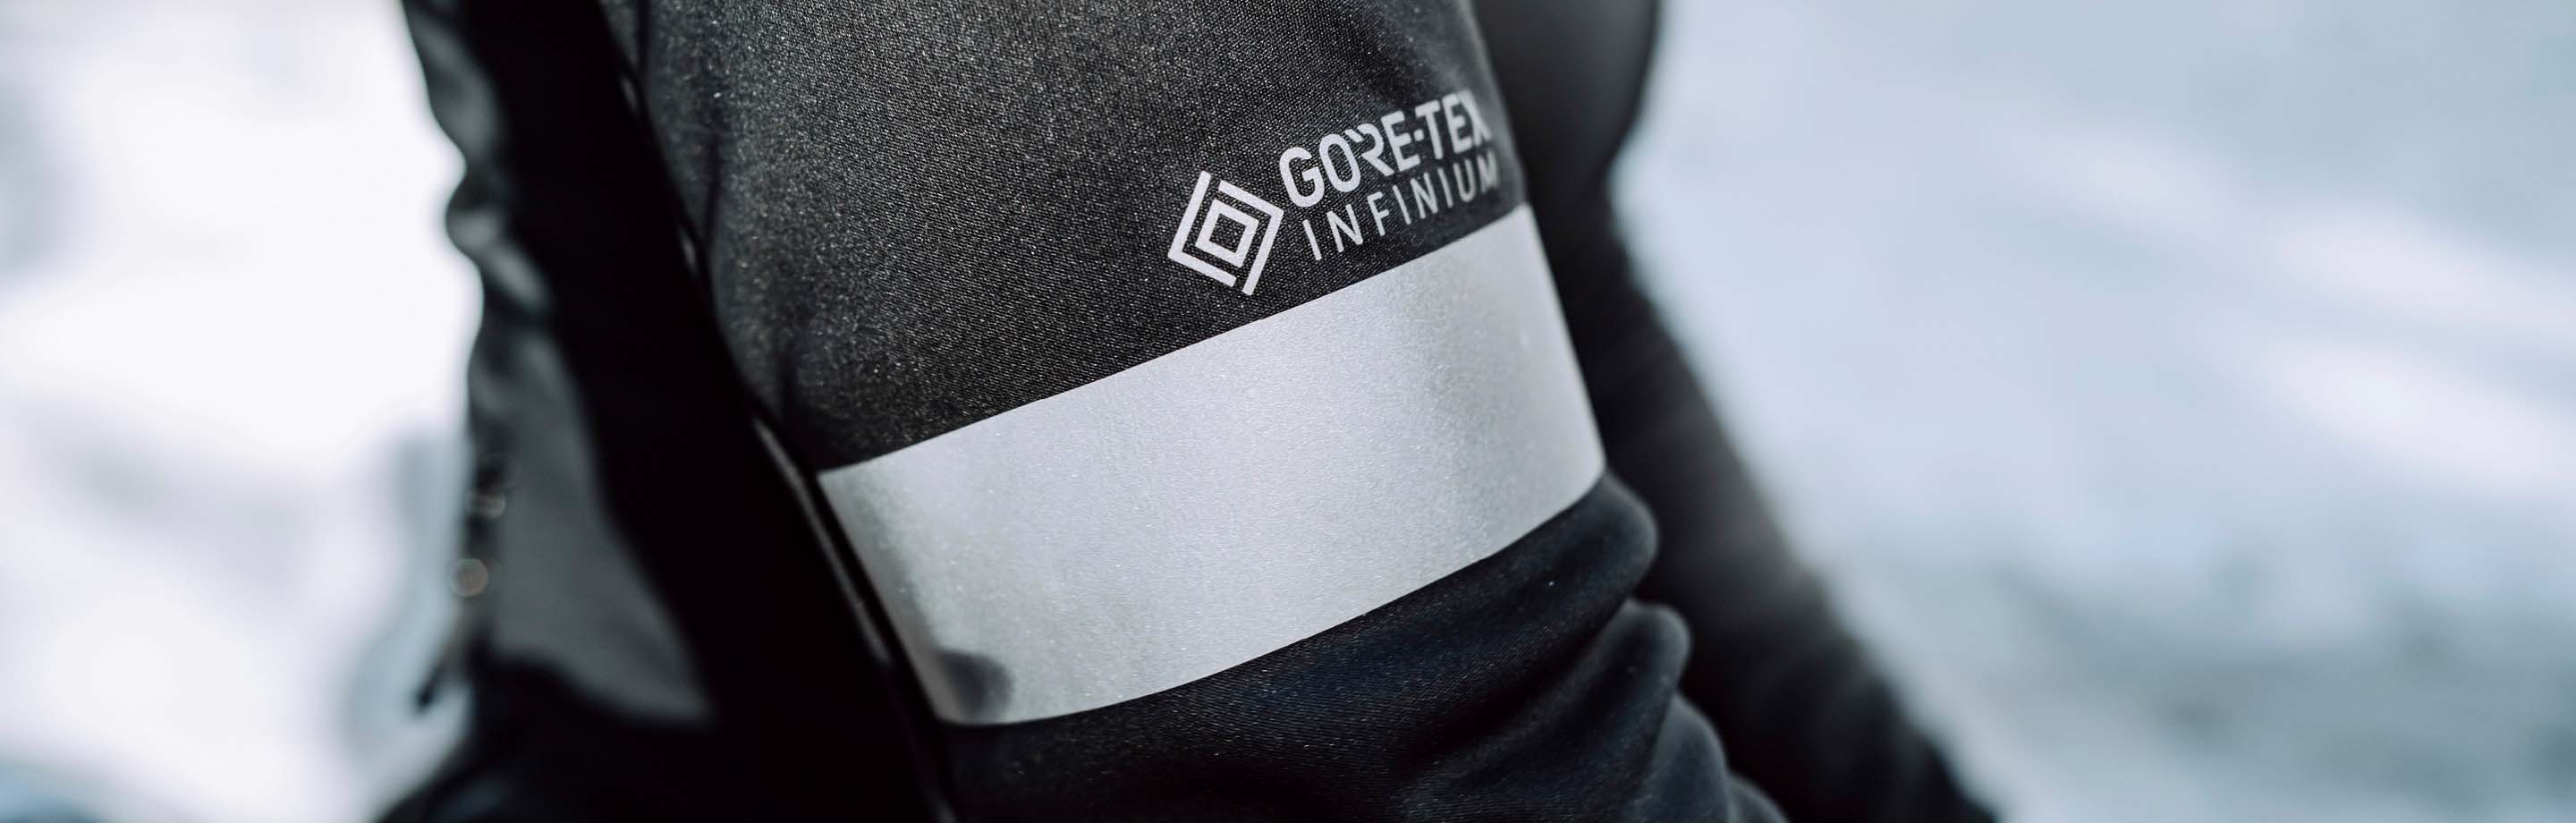 GORE-TEX INFINIUM™ -  Comodidad y funcionalidad: Chaquetas, camisetas, guantes